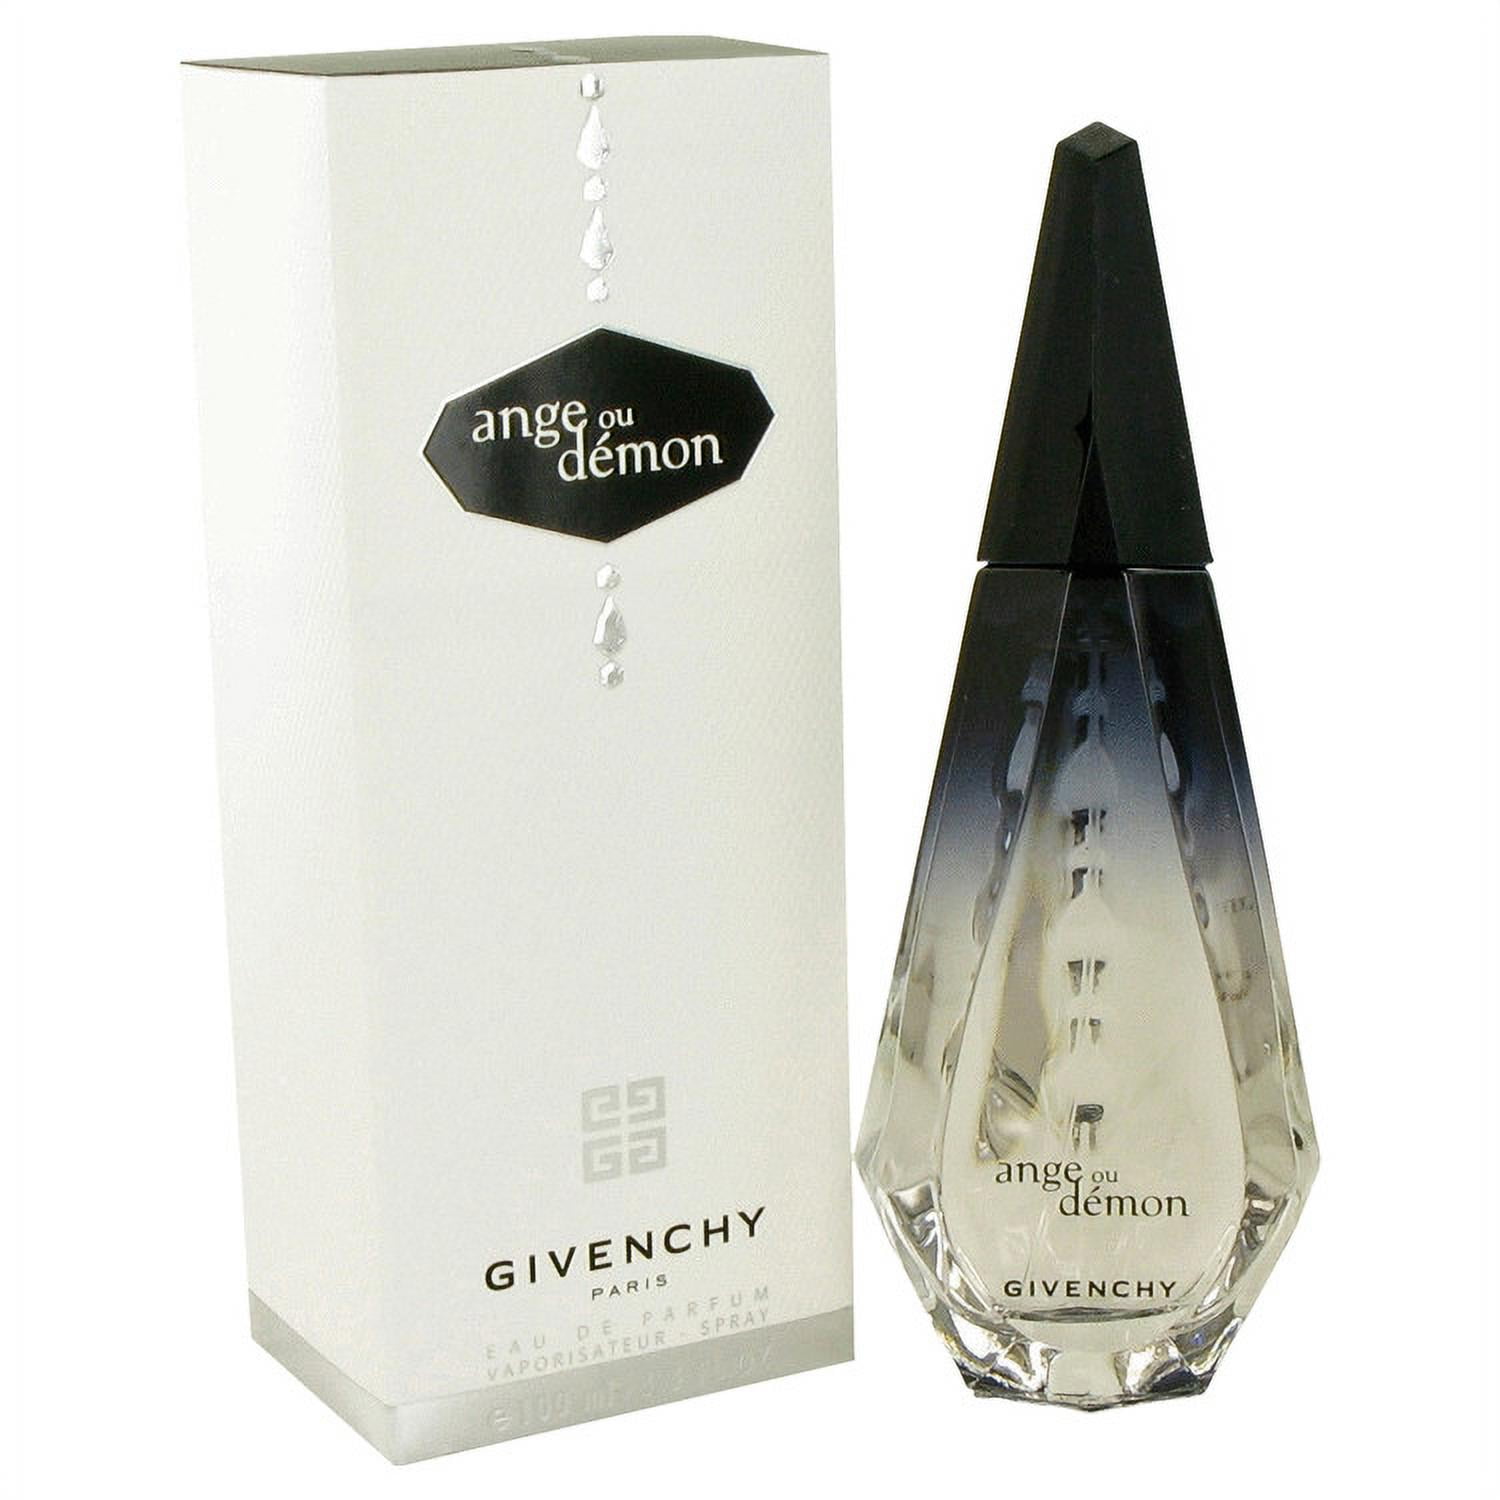 Givenchy ANGE OU DEMON Eau de Parfum, Perfume for Women, 3.4 Oz